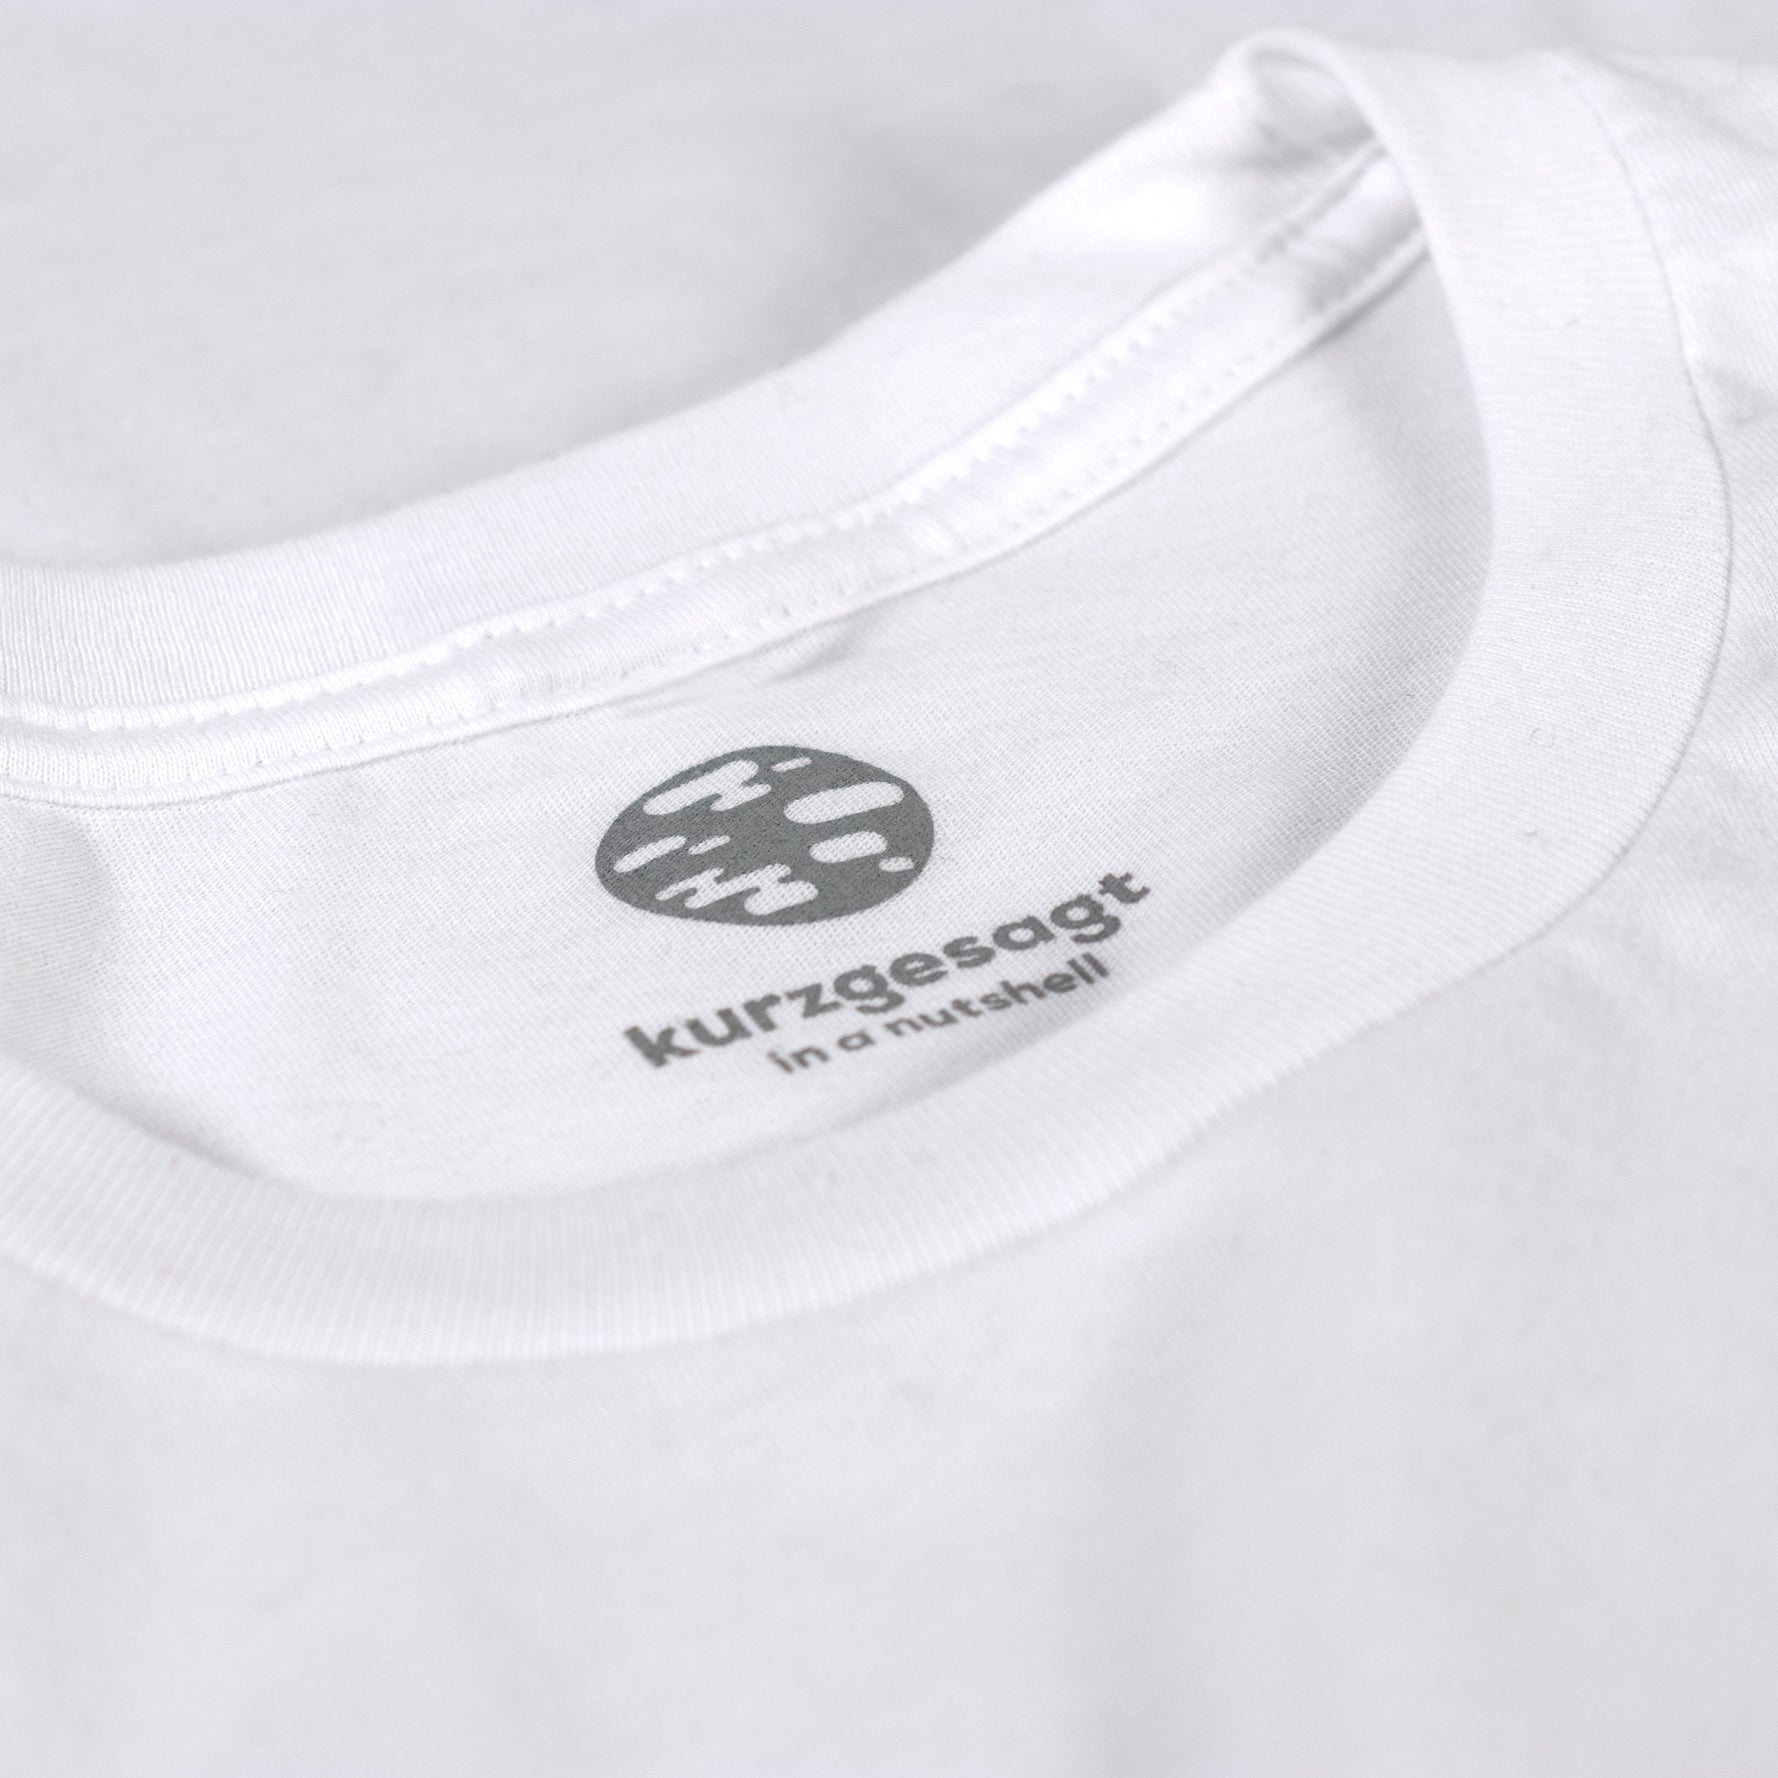 Duck T-Shirt Gray – Official Merch – the kurzgesagt shop